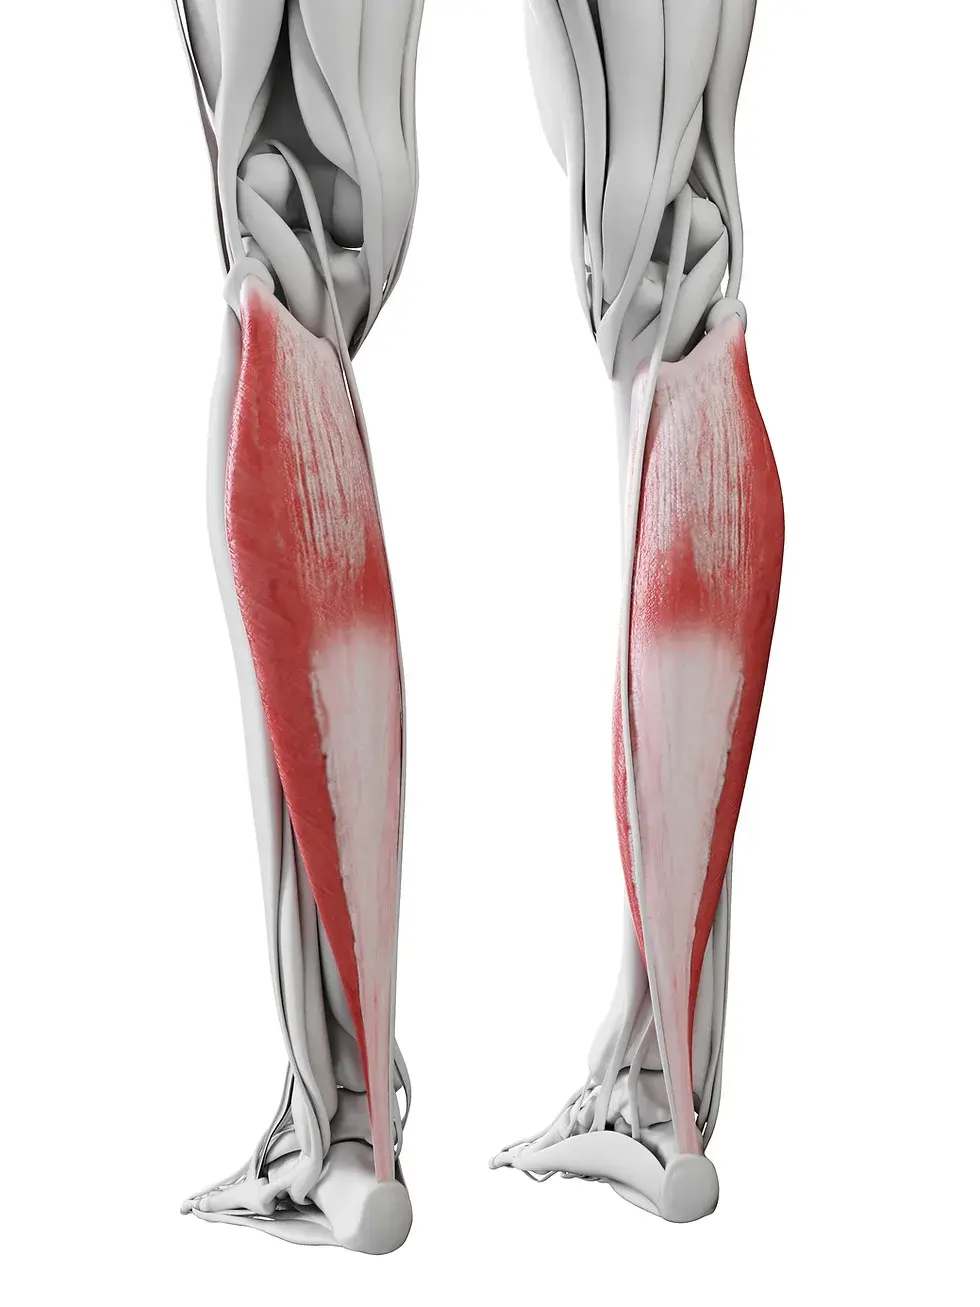 عضلات ساق پا که وظیفه ی پمپاژ خون را دارند.